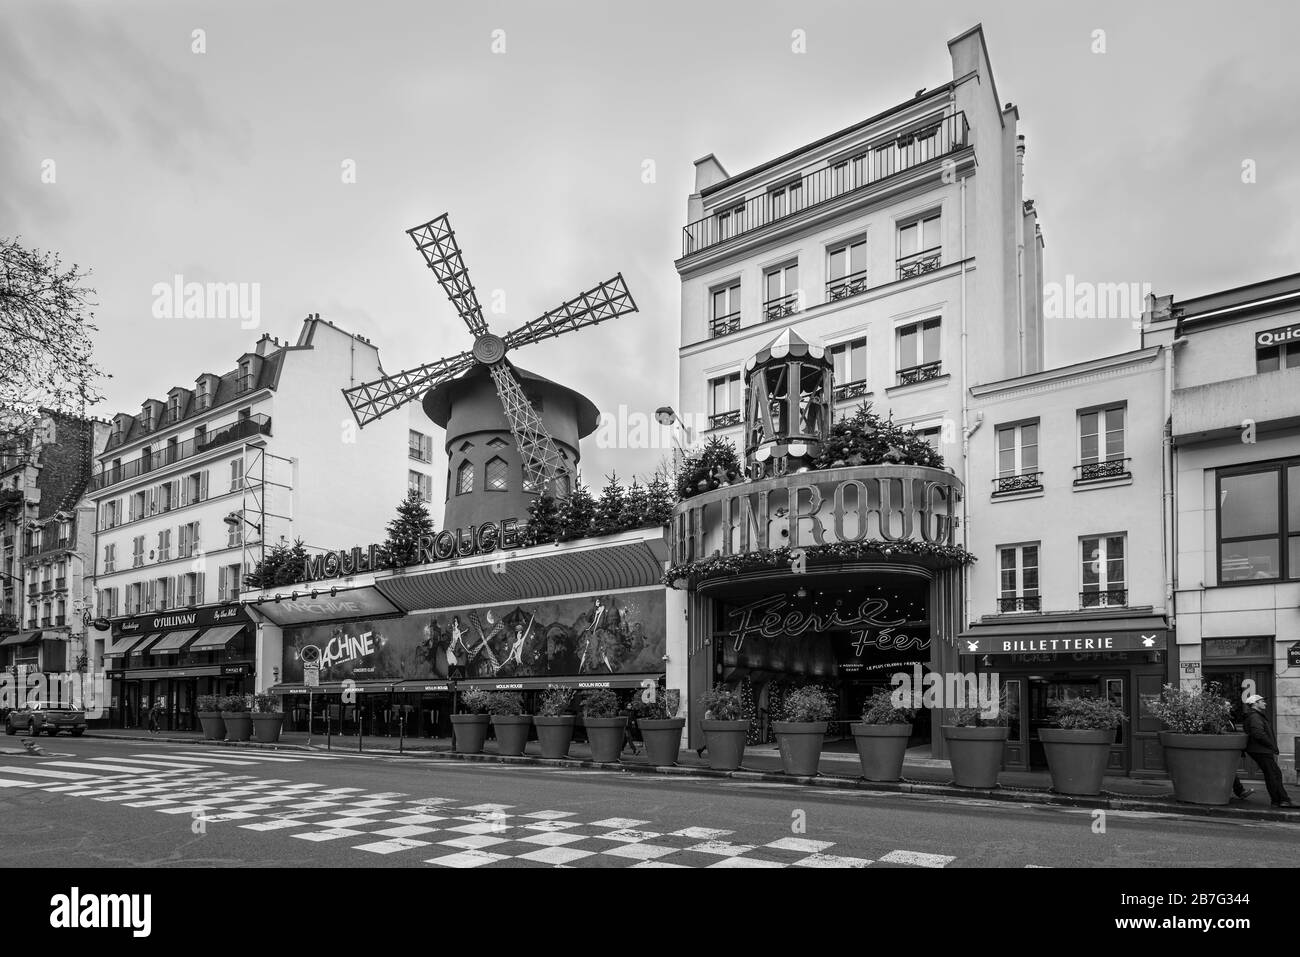 Paris, Frankreich - 23. Dezember 2018: Das Moulin Rouge in Paris, Frankreich. Moulin Rouge ist ein berühmtes Kabarett, das im Jahre 1889 erbaut wurde und sich im Pariser Rotlicht befindet Stockfoto